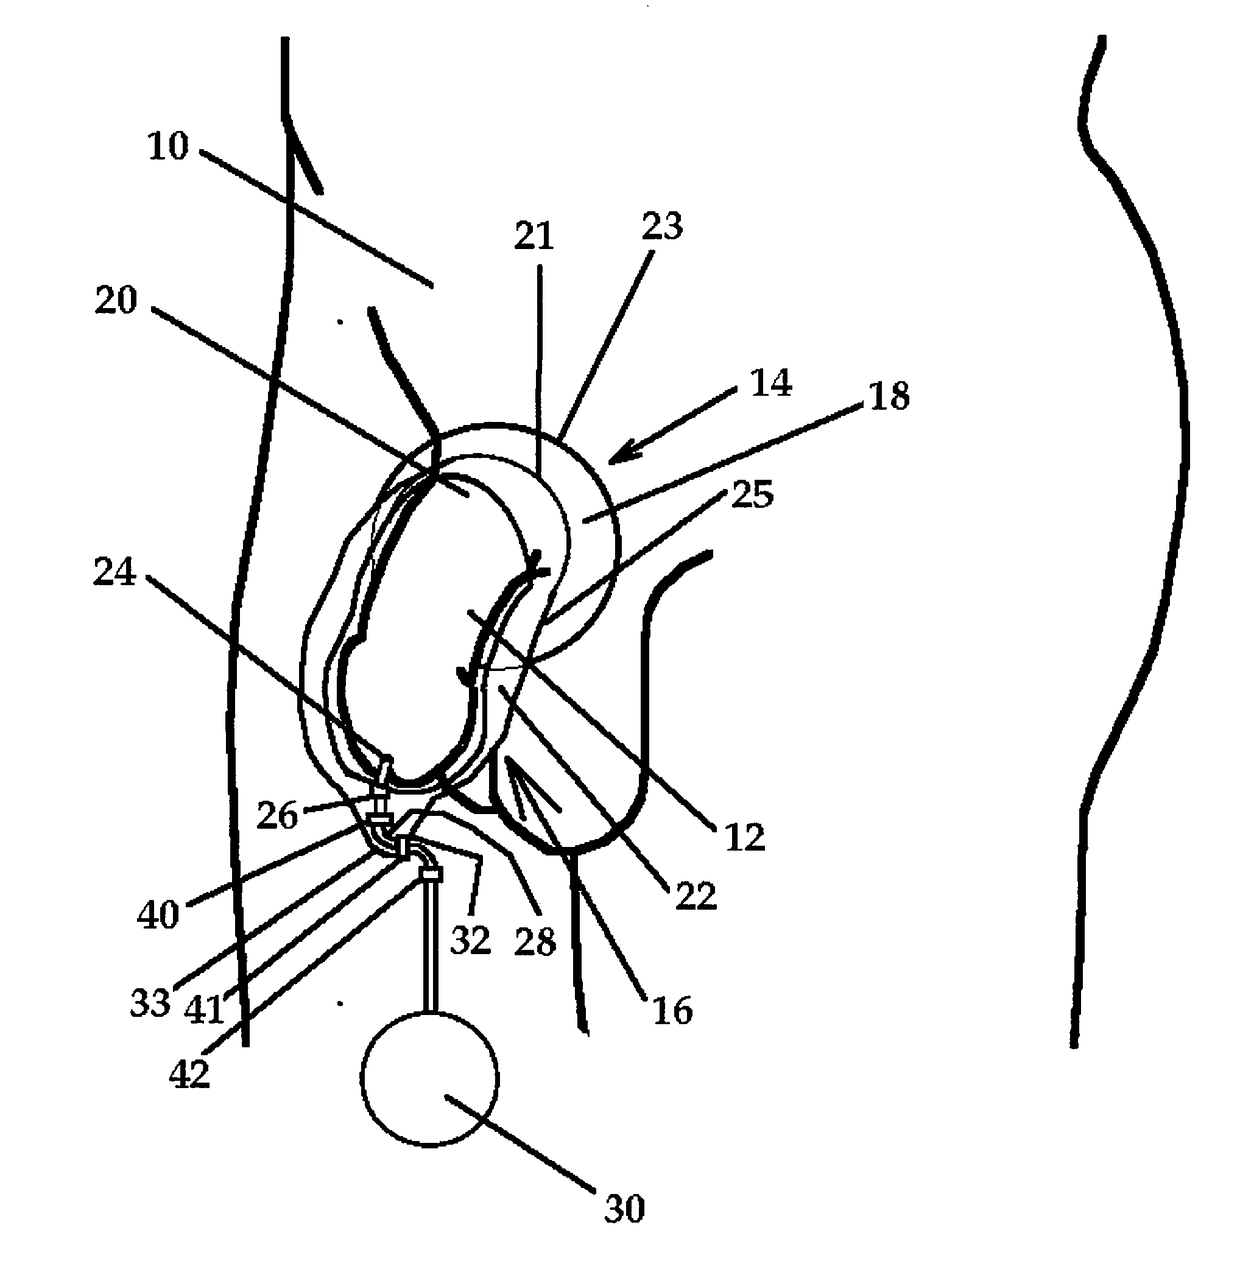 Male external catheter